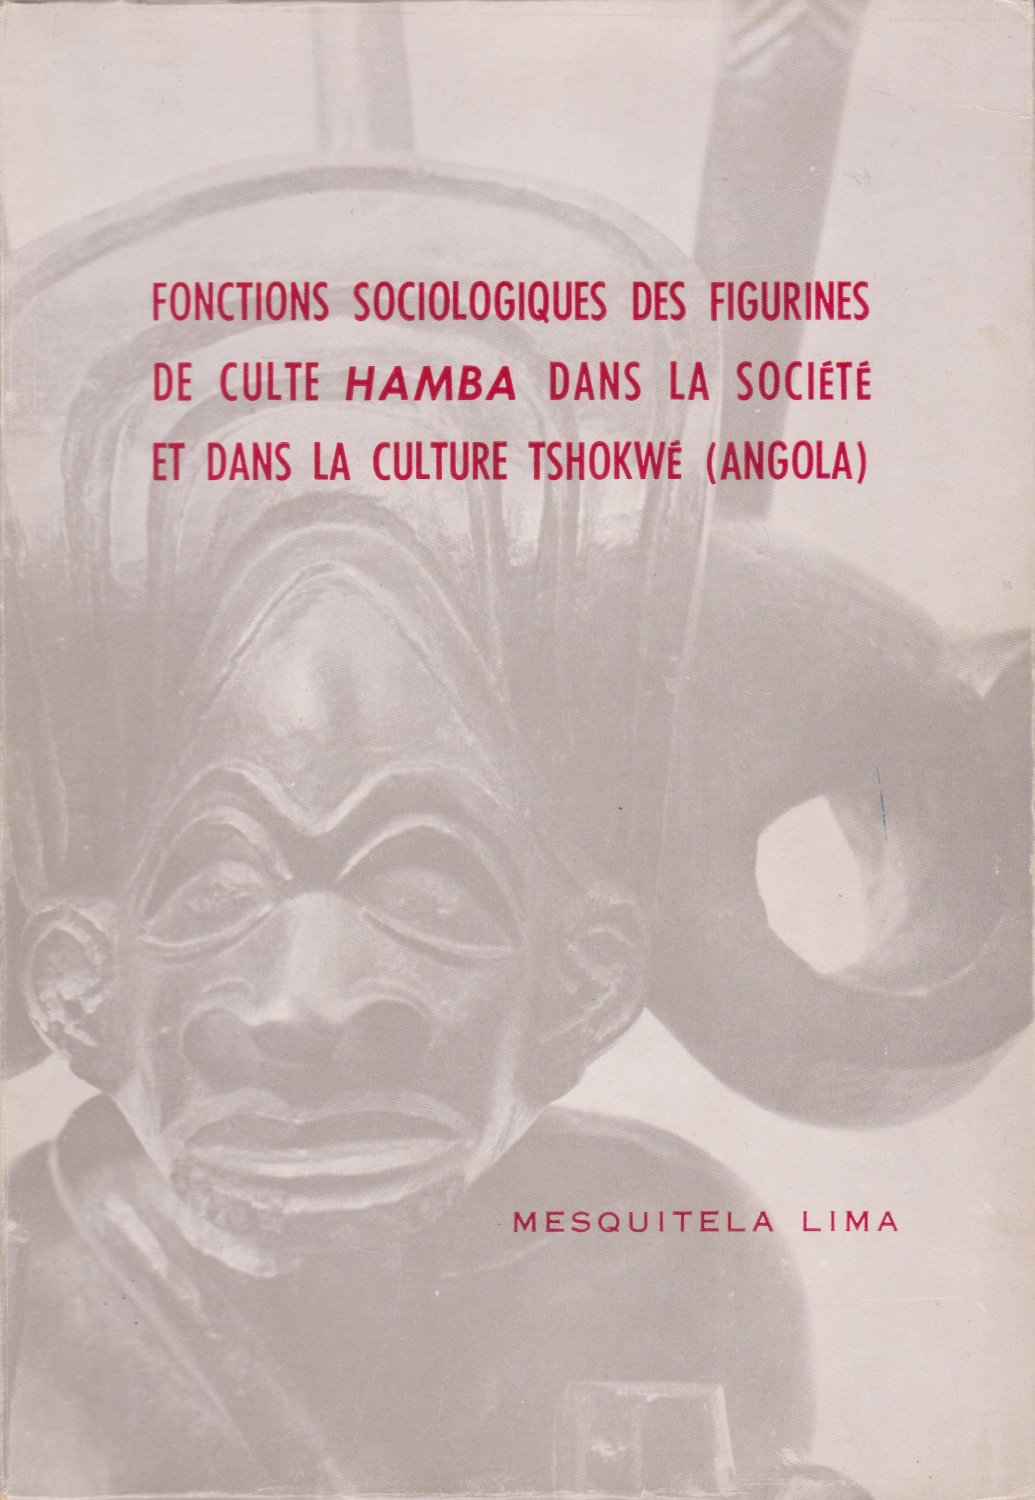 LIMA, Mesquitela:  Fonctions Sociologiques des Figurines de Culte HAMBA dans la Société et dans la Culture Tshokwe (Angola). 